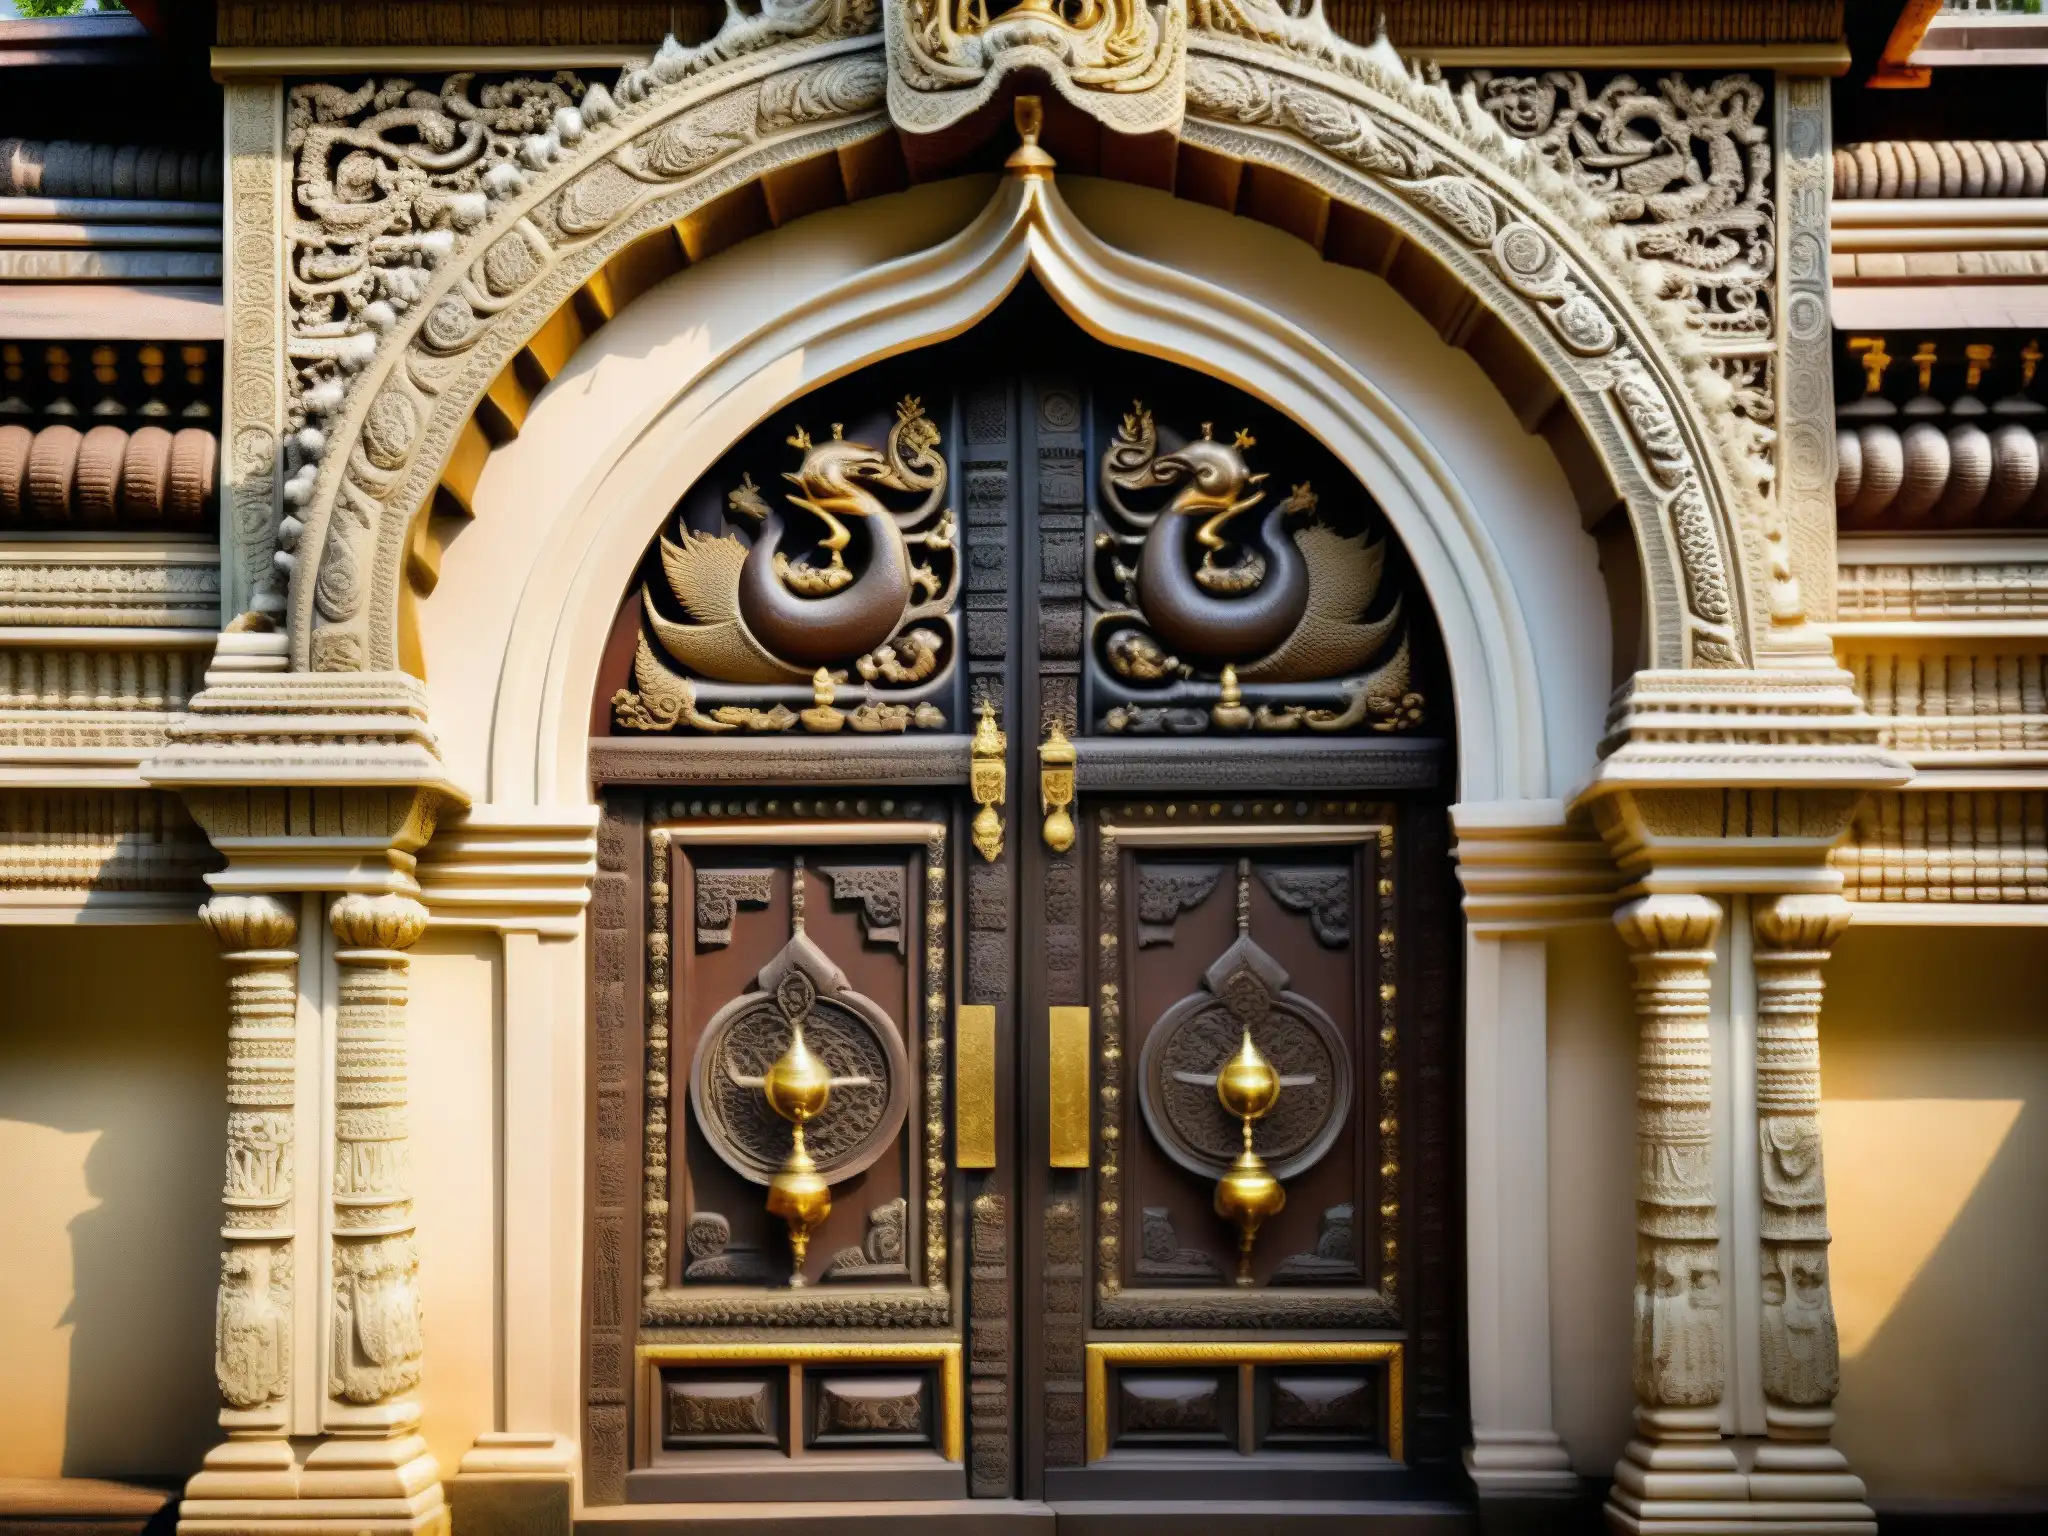 La imagen muestra la puerta detallada del Templo Padmanabhaswamy en Kerala, India, revelando los Secretos del Guardián del Tesoro